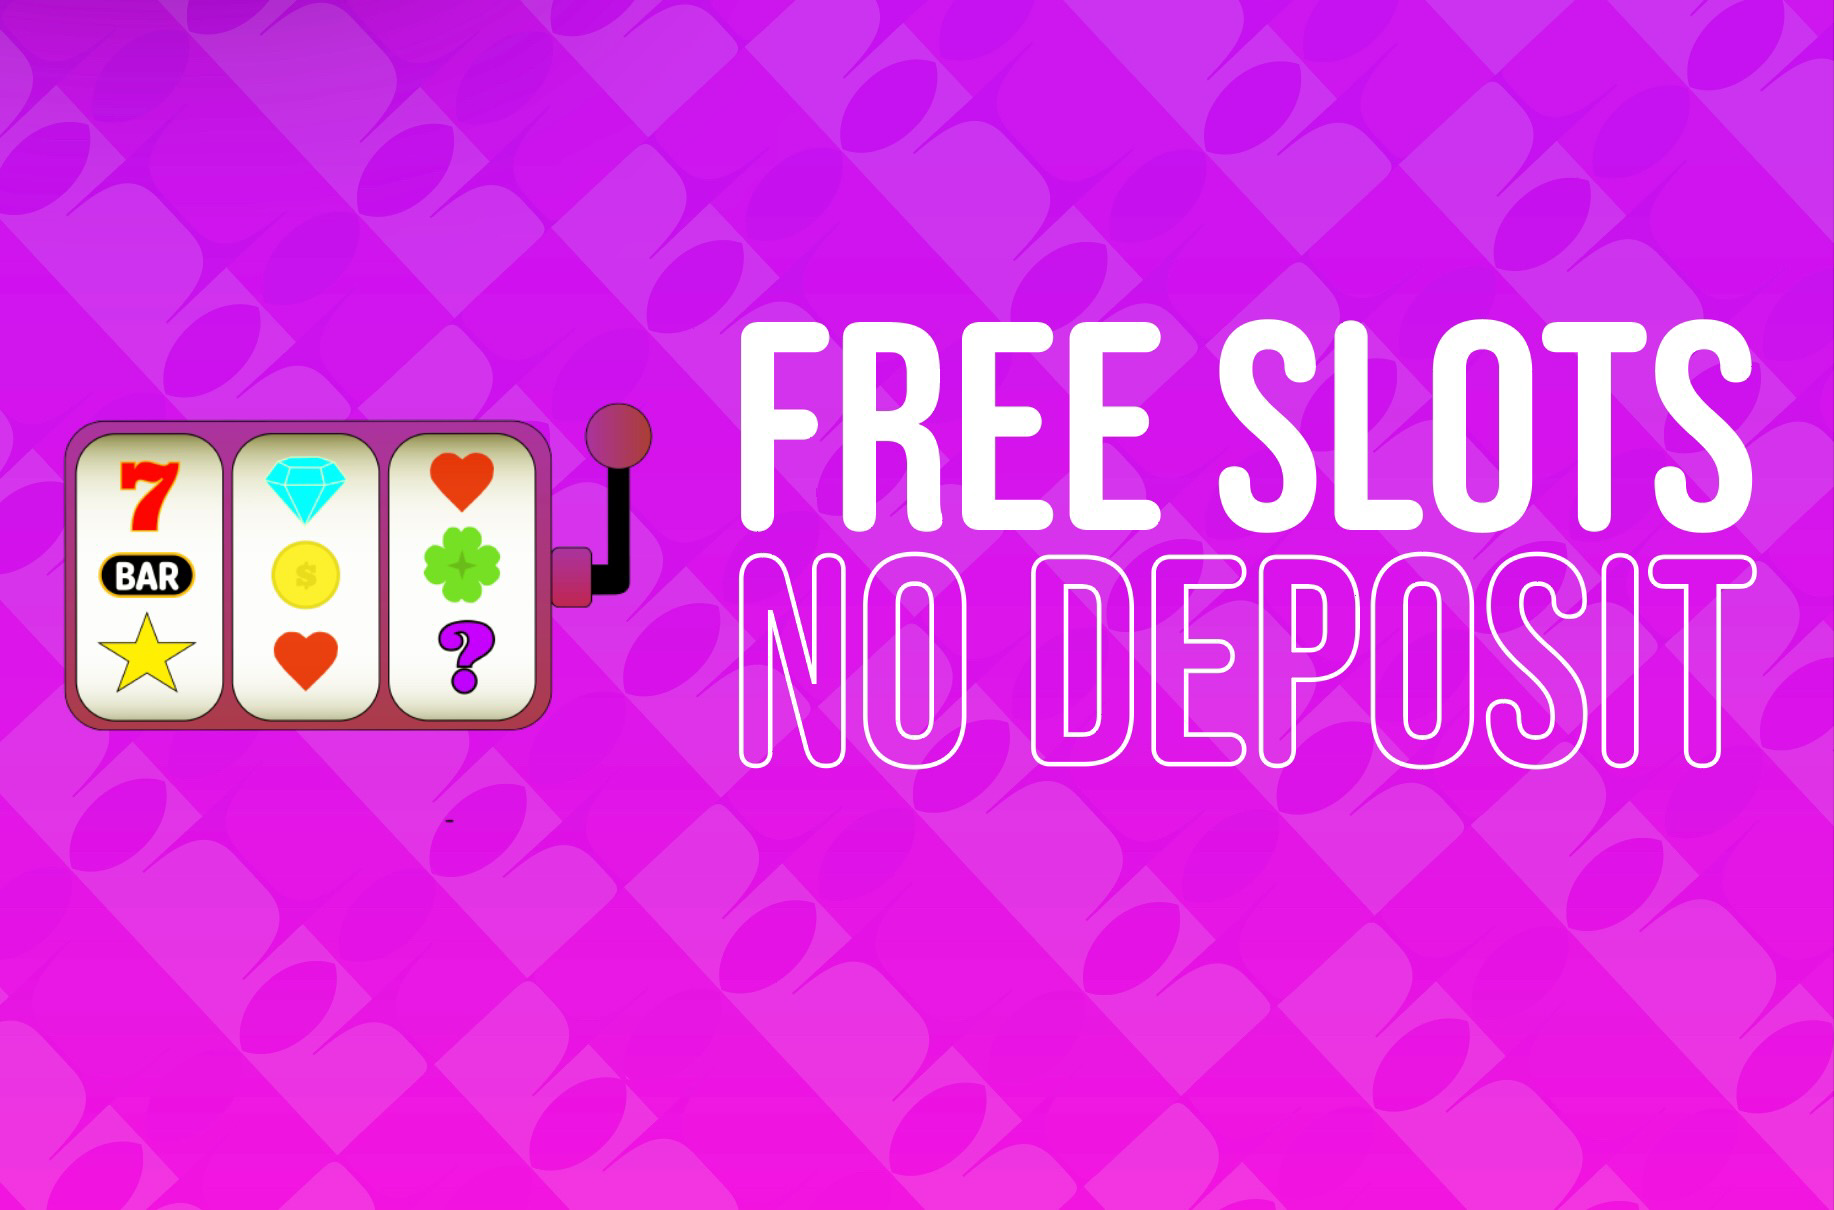 Free Slots No Deposit UK